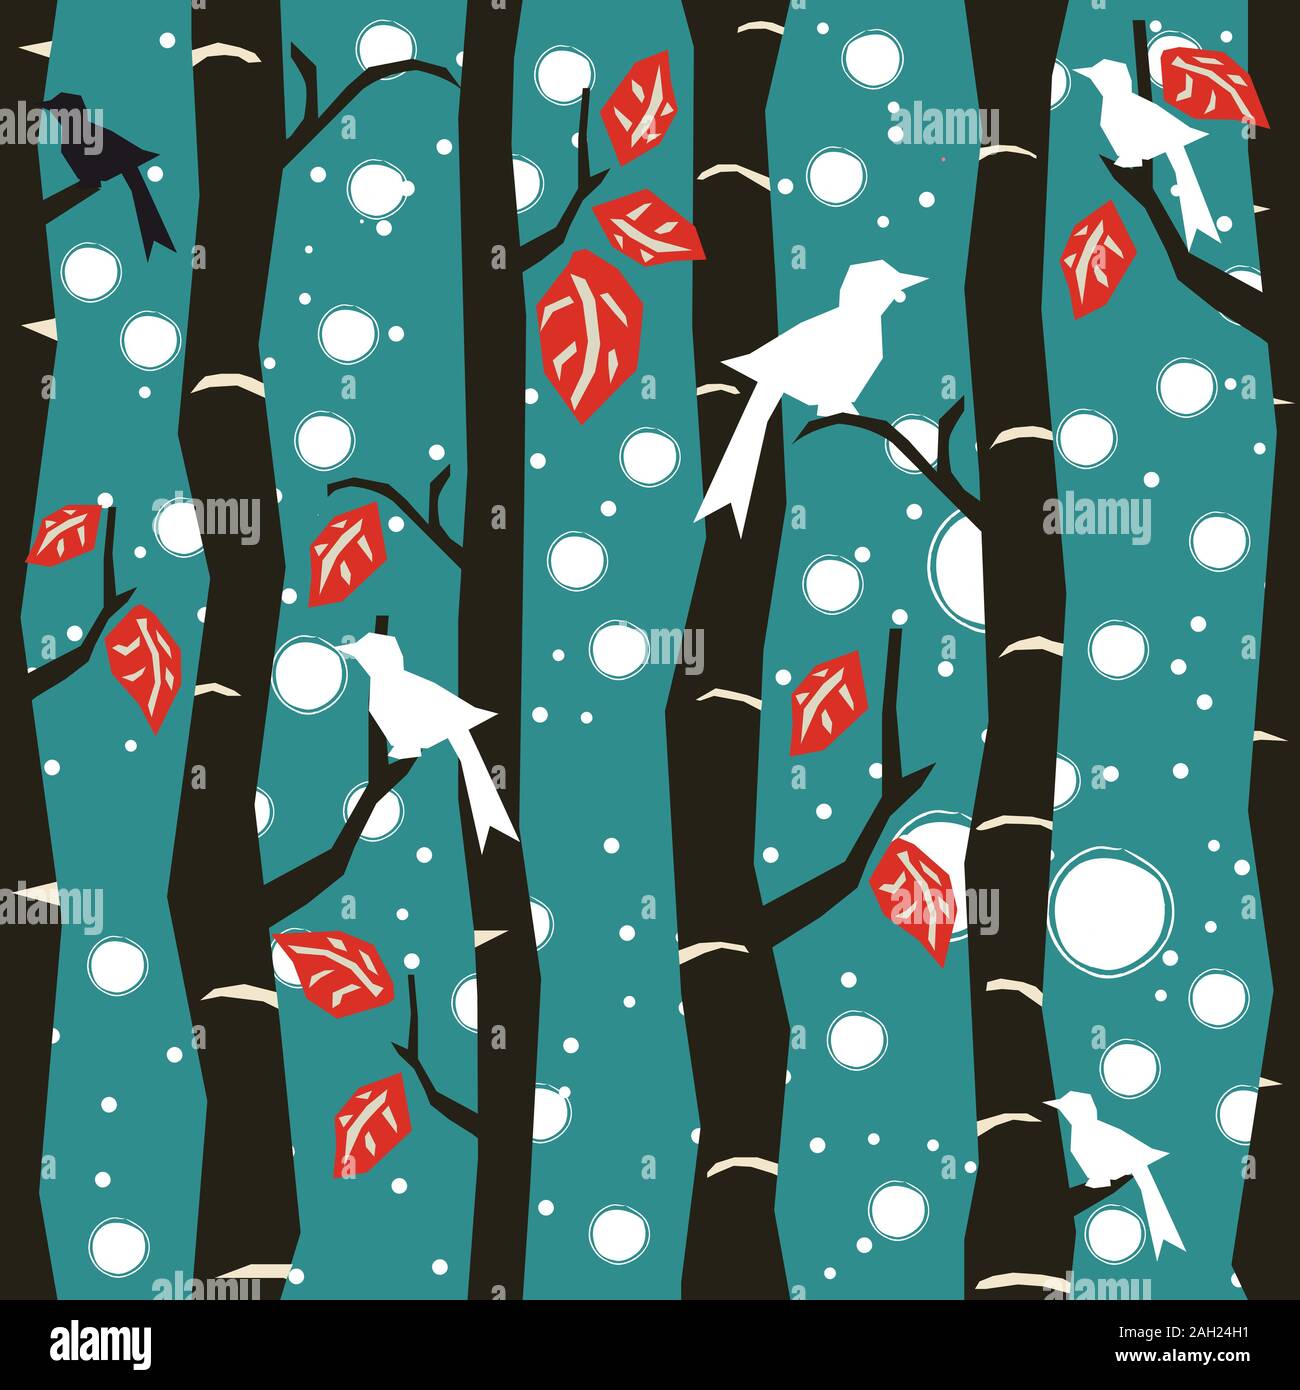 Nahtlose Baum Muster mit großen Vögel und Blätter. Vector Illustration. Stock Vektor